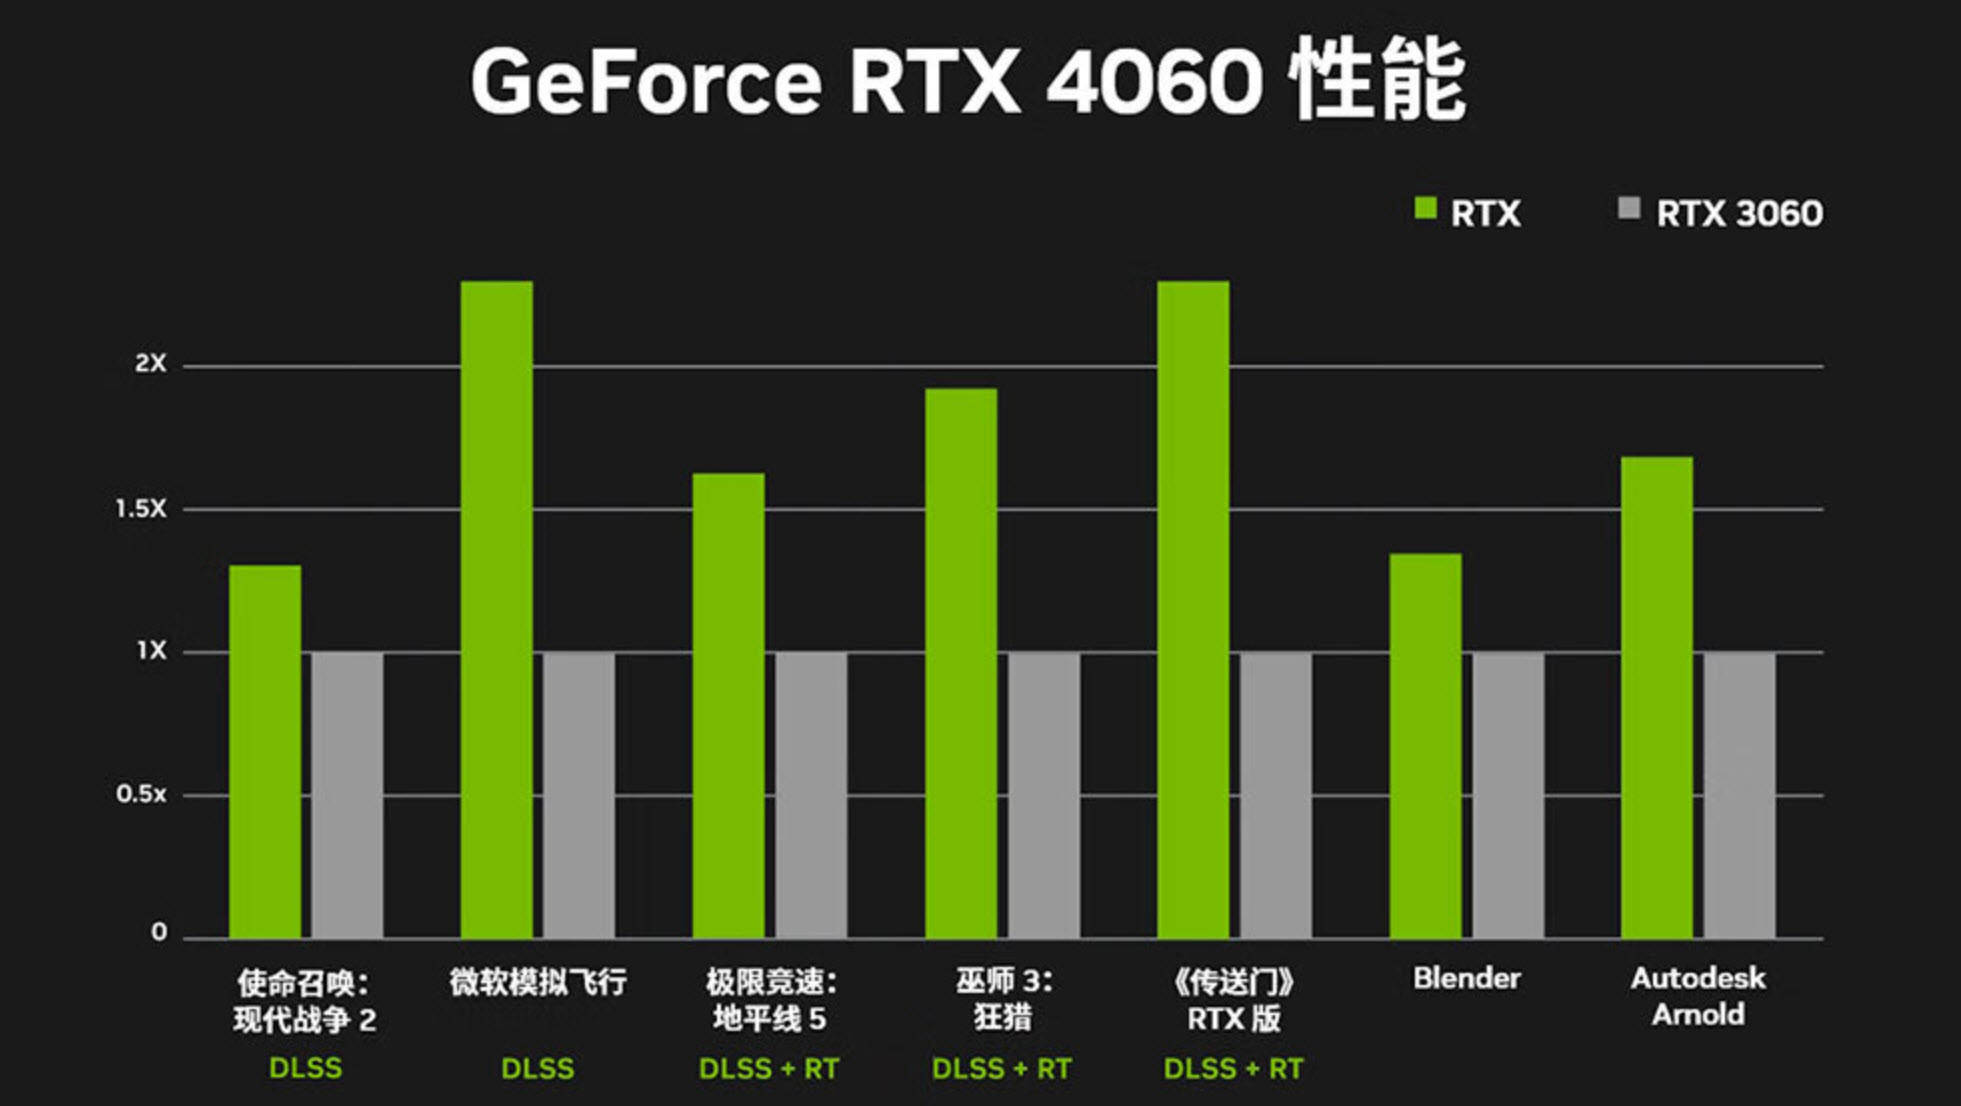 NVIDIA GeForce GTX 660：卓越性能与稳定表现的游戏利器